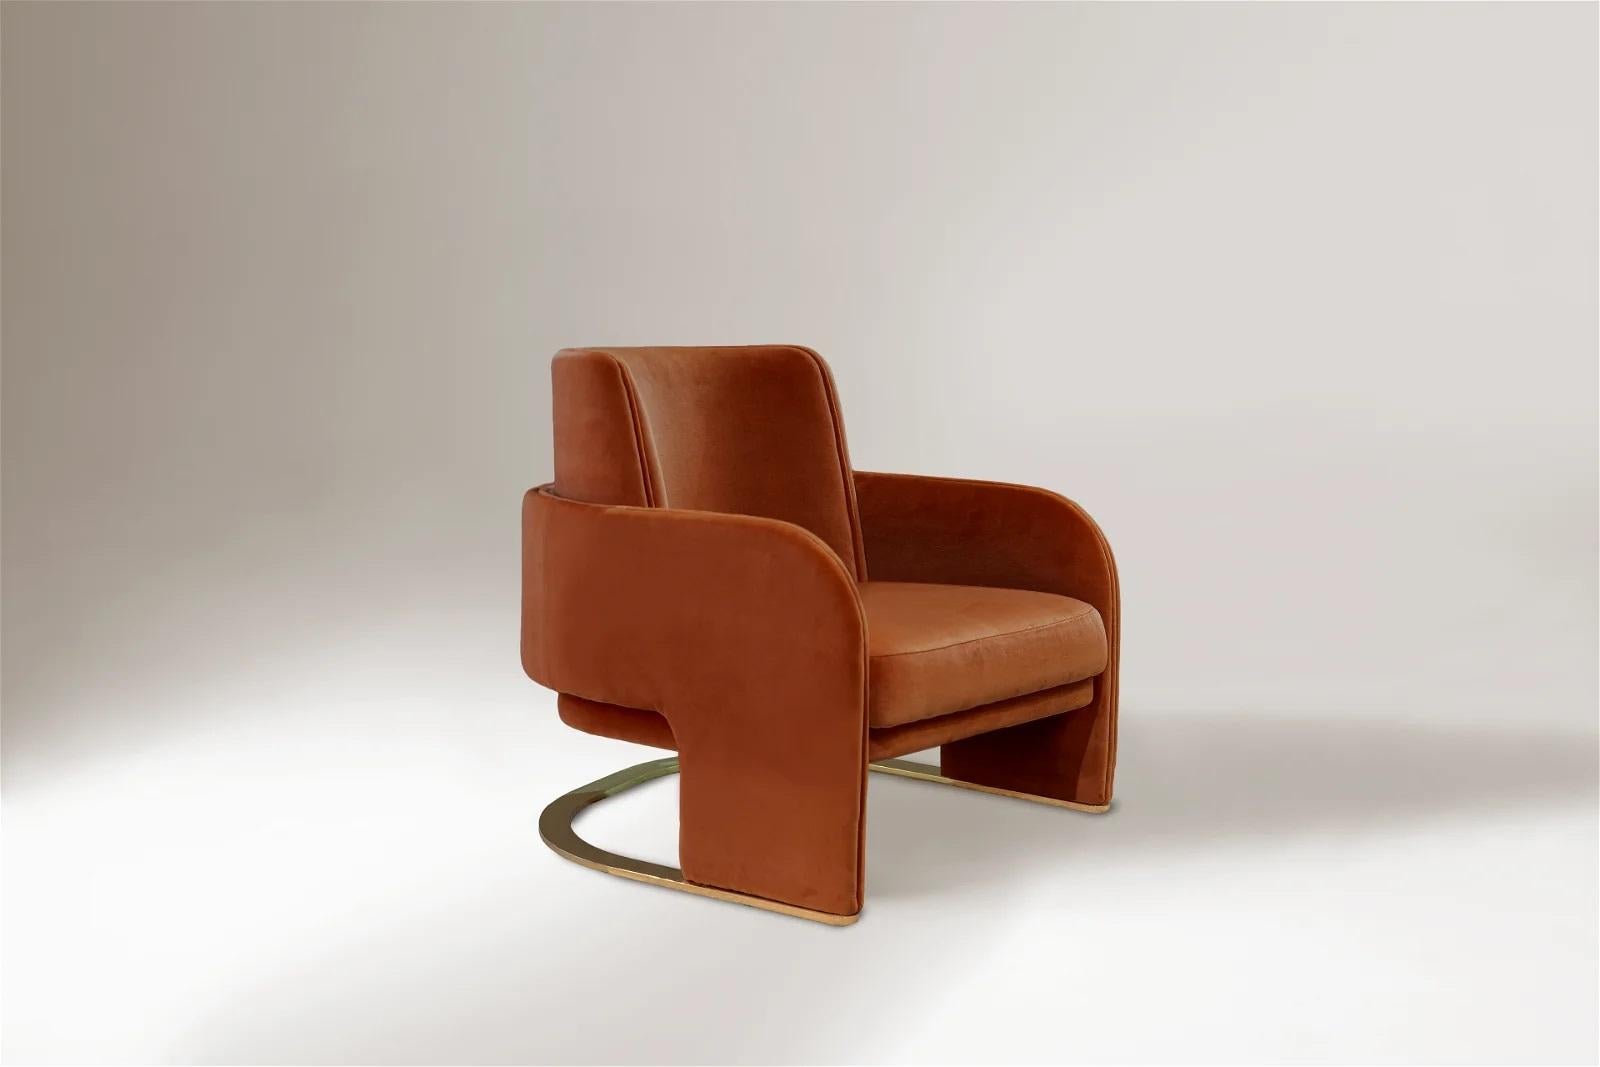 Der Stuhl Odisseia verkörpert den ästhetischen Geist des Weltraumzeitalters, eine neue Art von diskretem Luxus und Komfort, inspiriert von einer futuristischen Ära, die durch neue visuelle Erfahrungen und Konzepte der Zukunft geschaffen wurde.